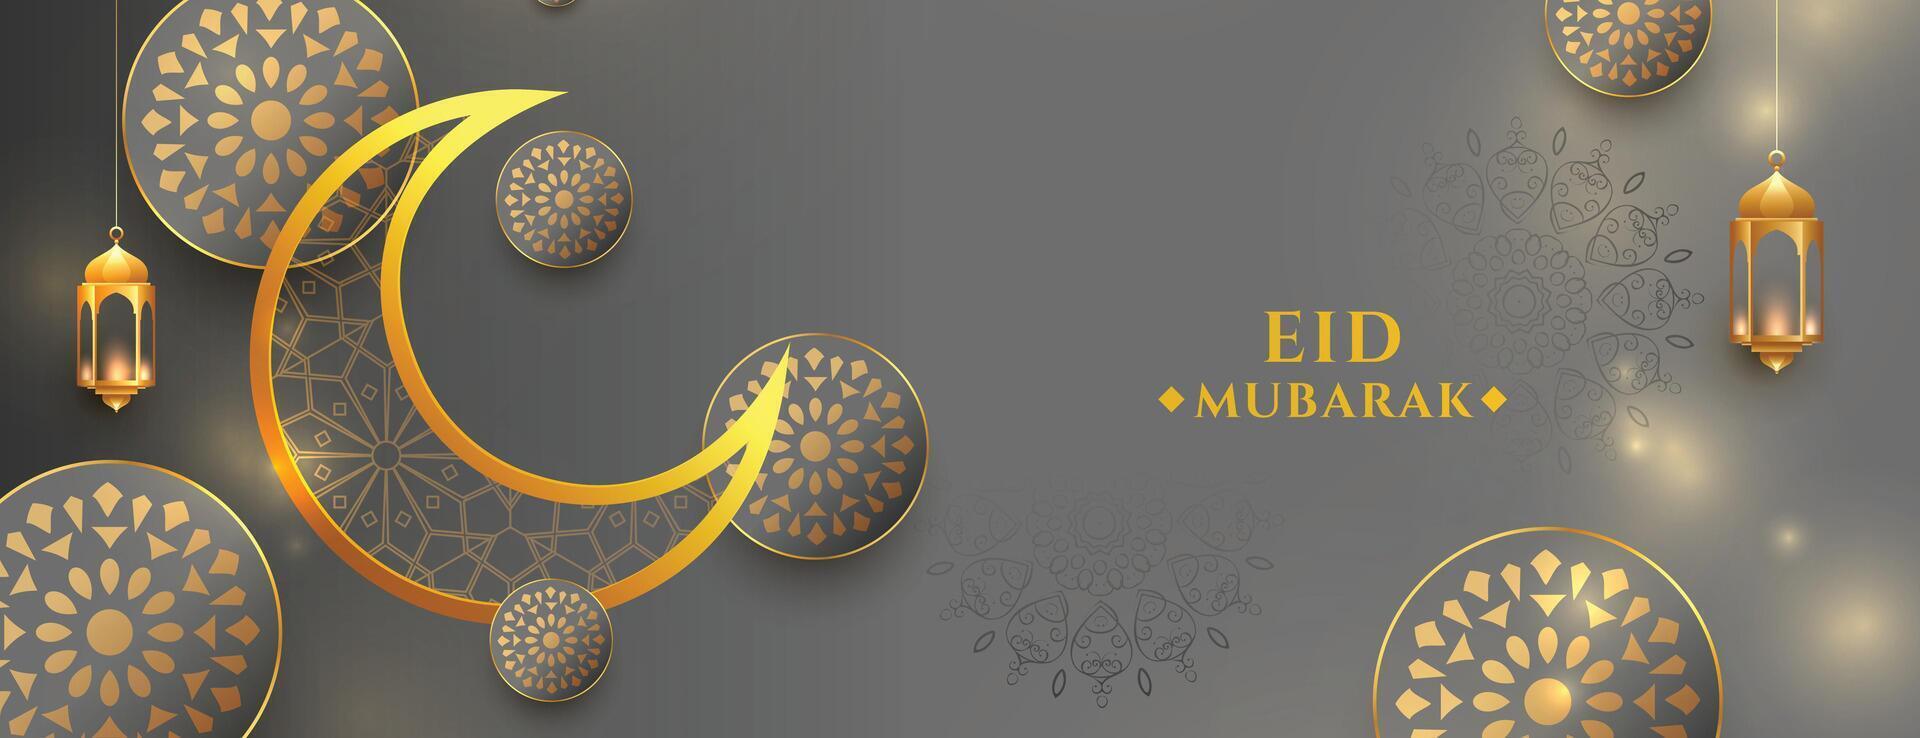 gouden eid mubarak realistisch banier ontwerp vector